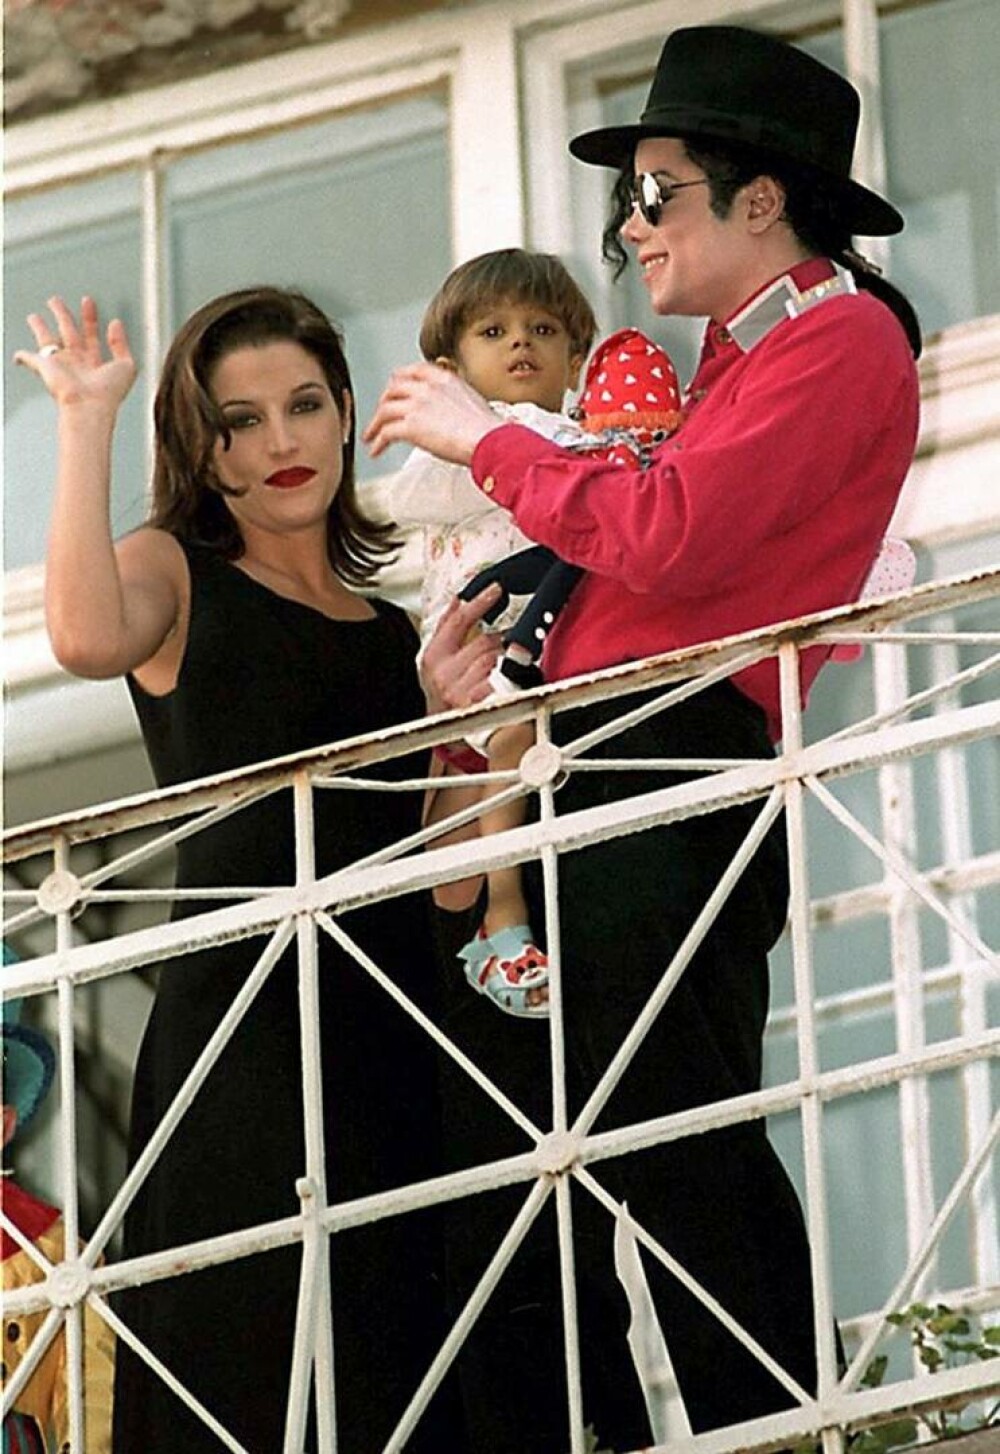 Se împlinesc 30 de ani de când Michael Jackson și Lisa Marie Presley s-au căsătorit în secret. GALERIE FOTO - Imaginea 15